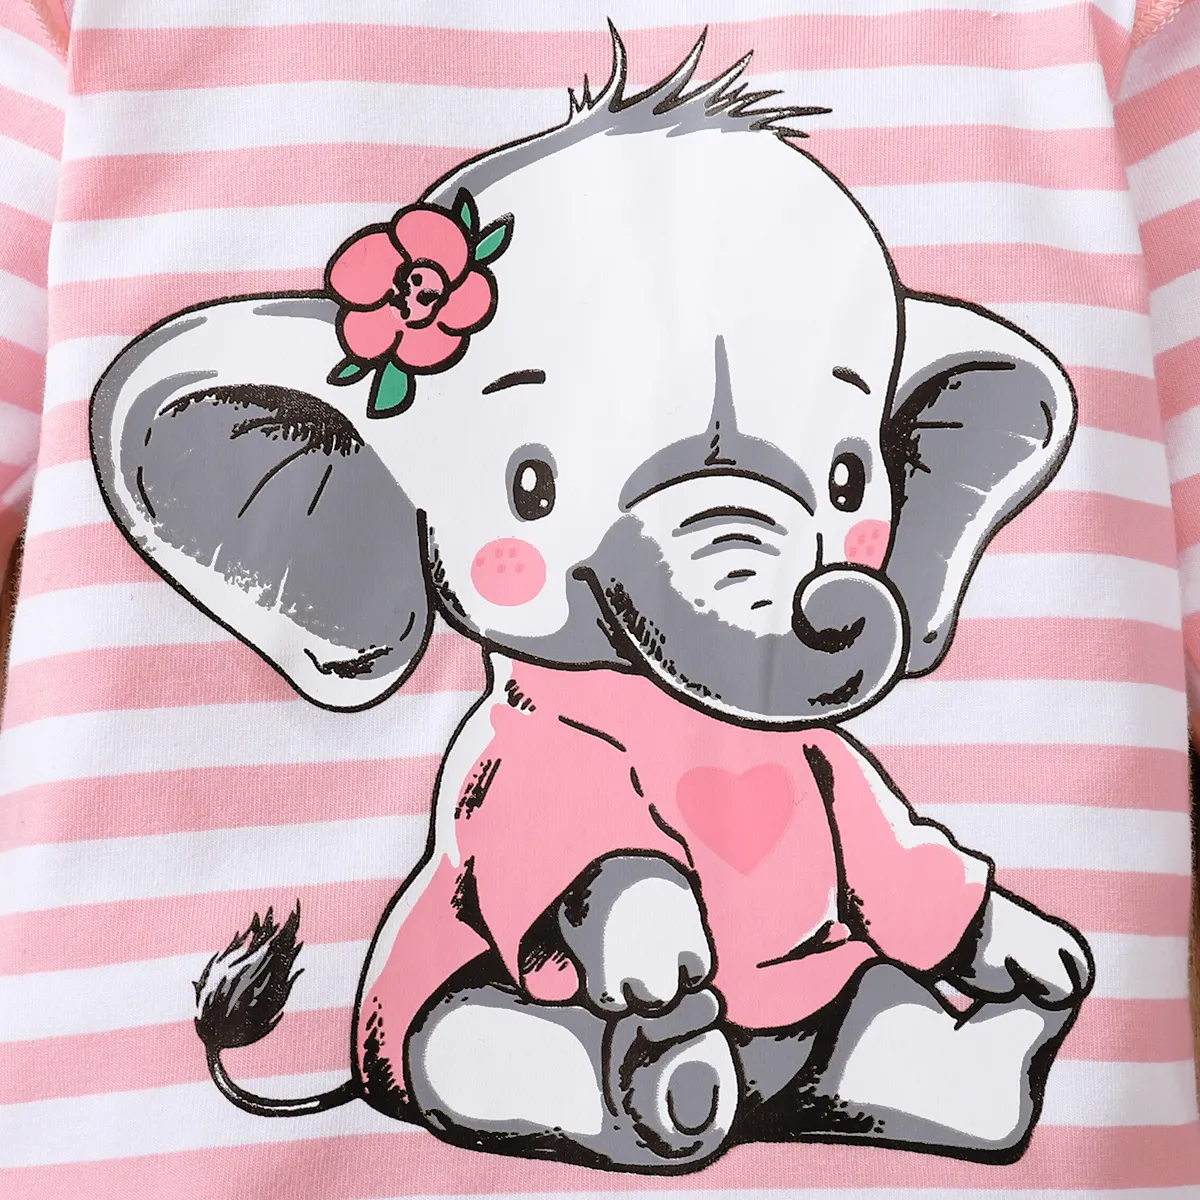 2件 嬰兒 中性 大象 童趣 長袖 嬰兒套裝 粉色 big image 1